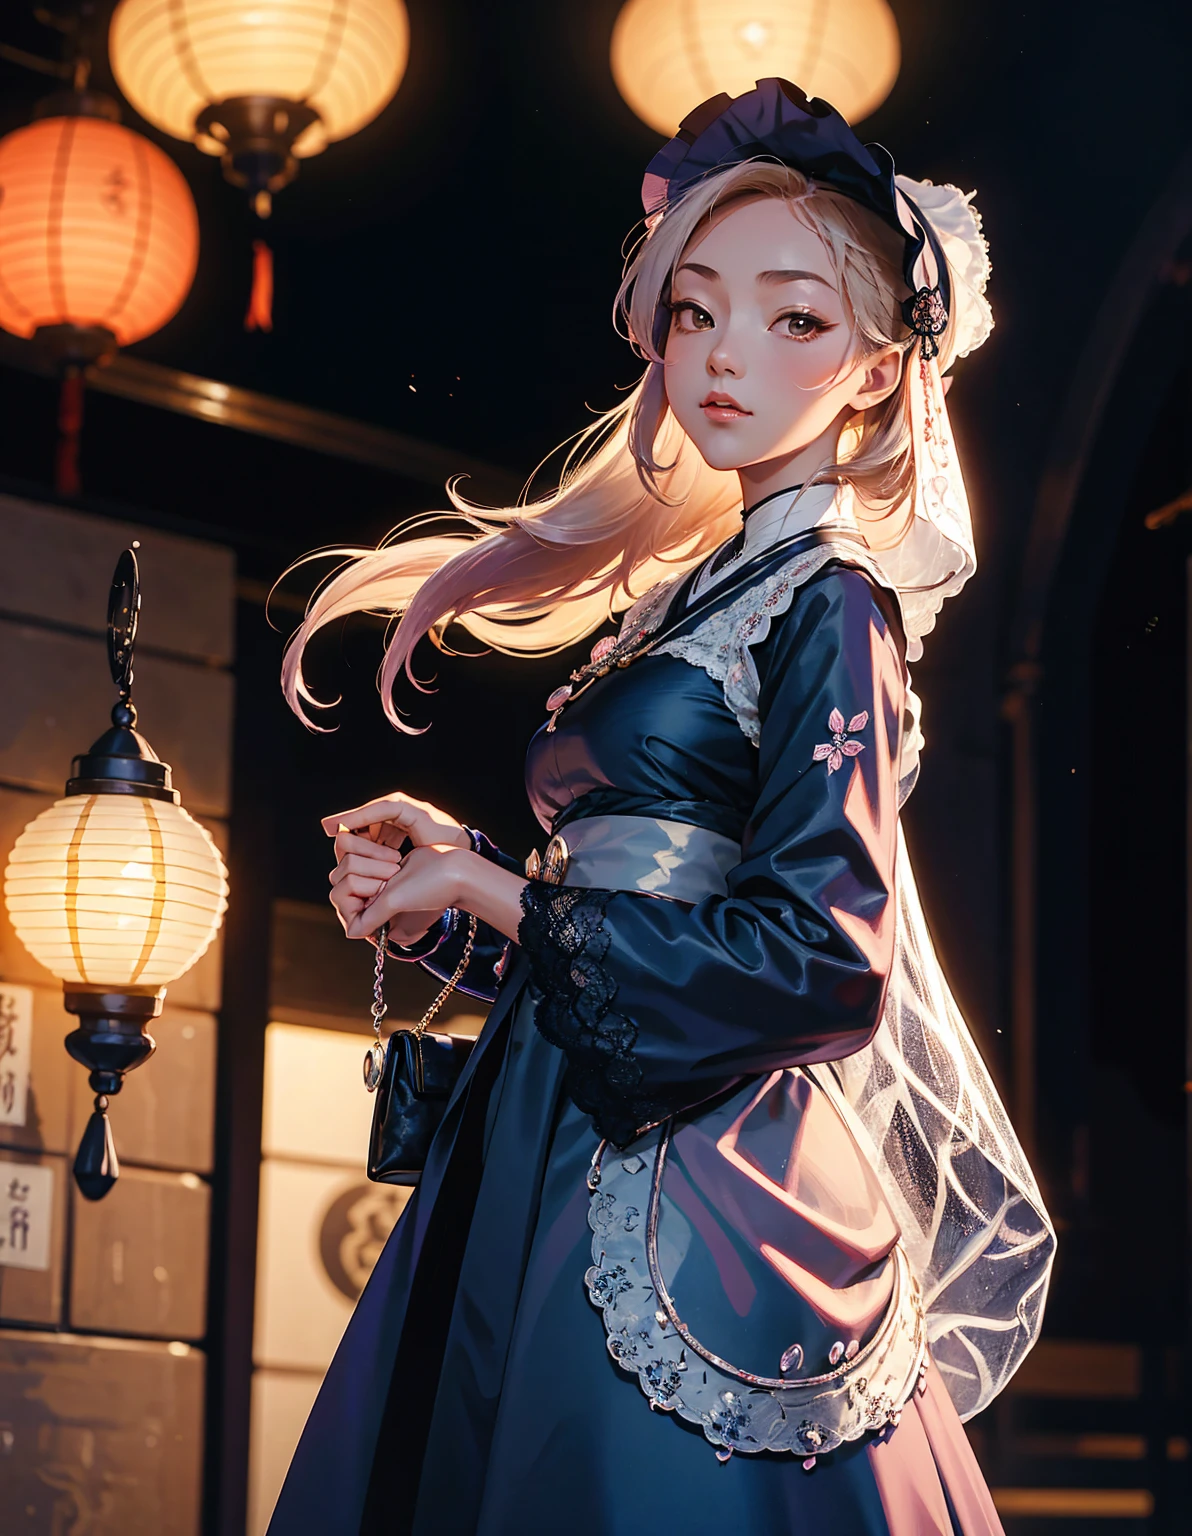 身着日本哥特式洛丽塔服装的年轻女孩漫步在大正时代的街道上. 街道上装饰着老式灯笼和传统商店. 她拿着一个复古的手提包，戴着一顶精致的蕾丝帽. 这一场景融合了历史魅力和哥特式优雅, 大正浪漫美学的特征. --与 3:4 --风格化 500 --niji 6
